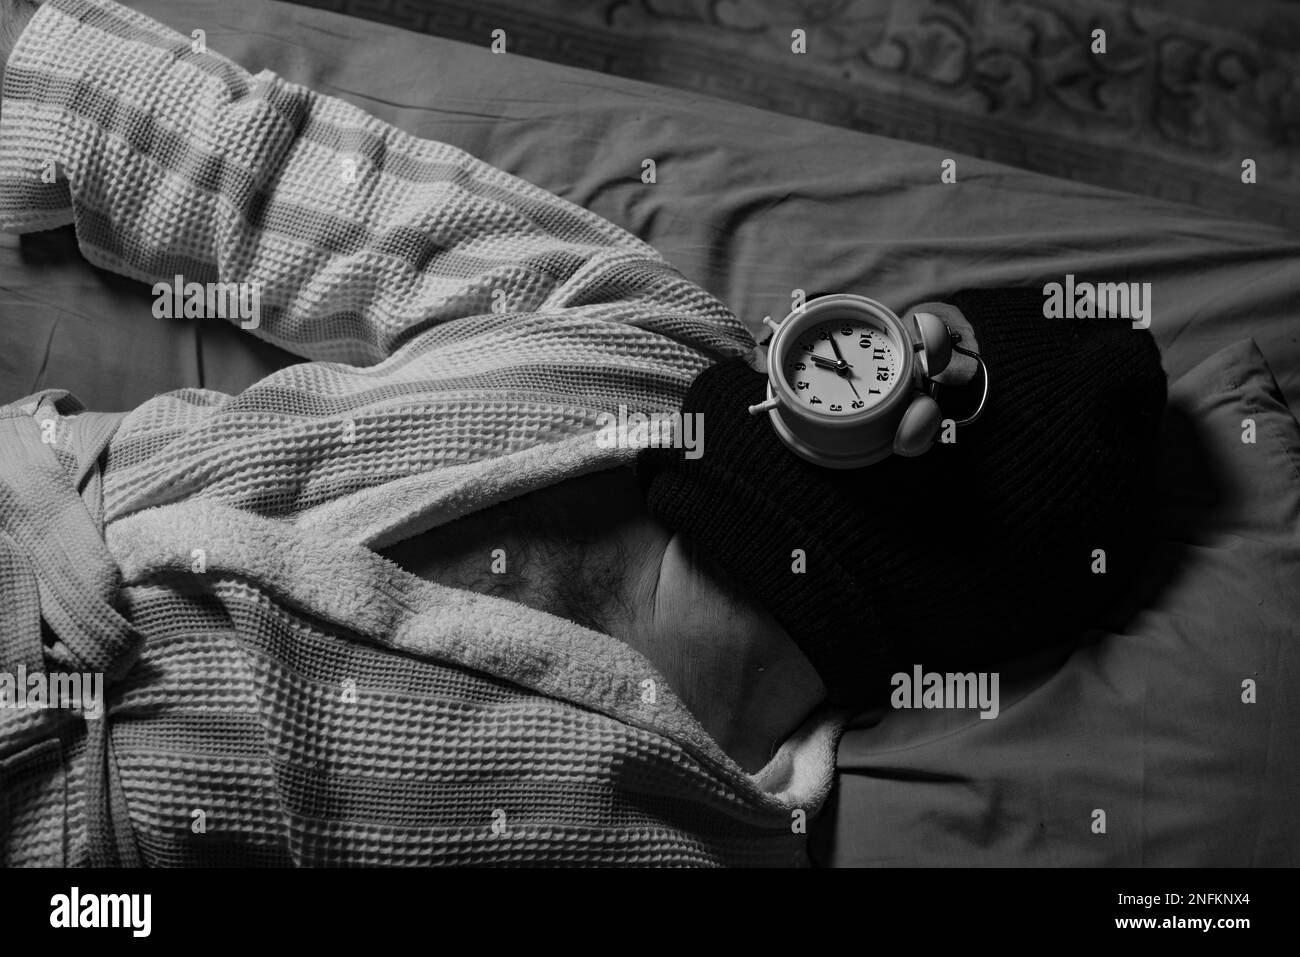 Voleur de temps, concept de procrastination. Un homme dans une balaclava se trouve et dort avec un réveil sur son visage. Gérez votre temps. Image en noir et blanc. Banque D'Images